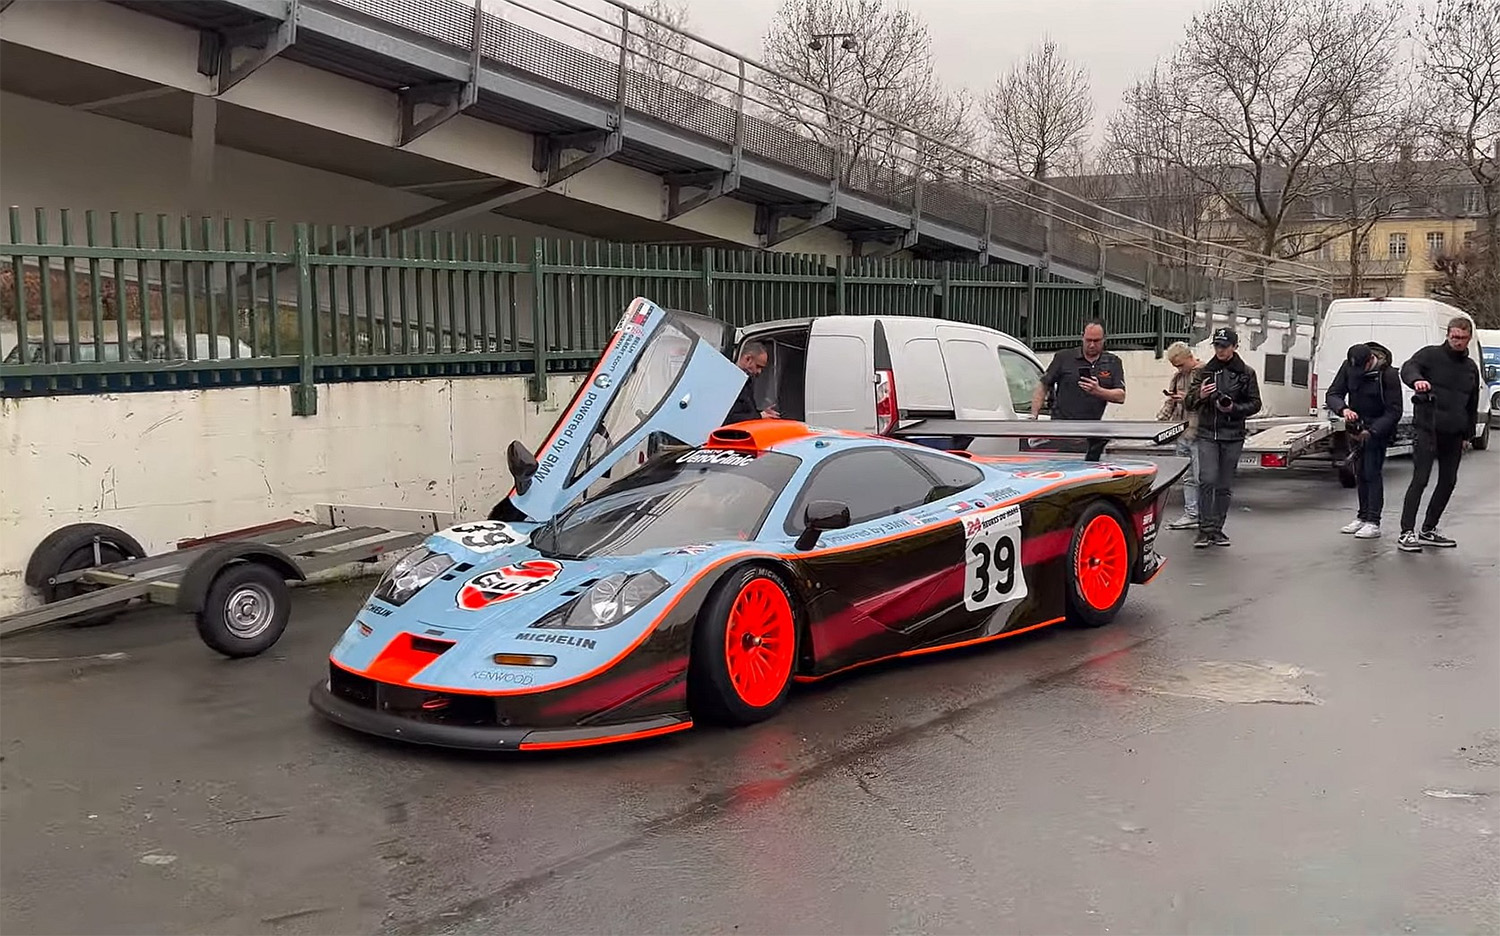 A Le Mans competition McLaren F1 GTR Longtail loading into Paris Retromobile car show 